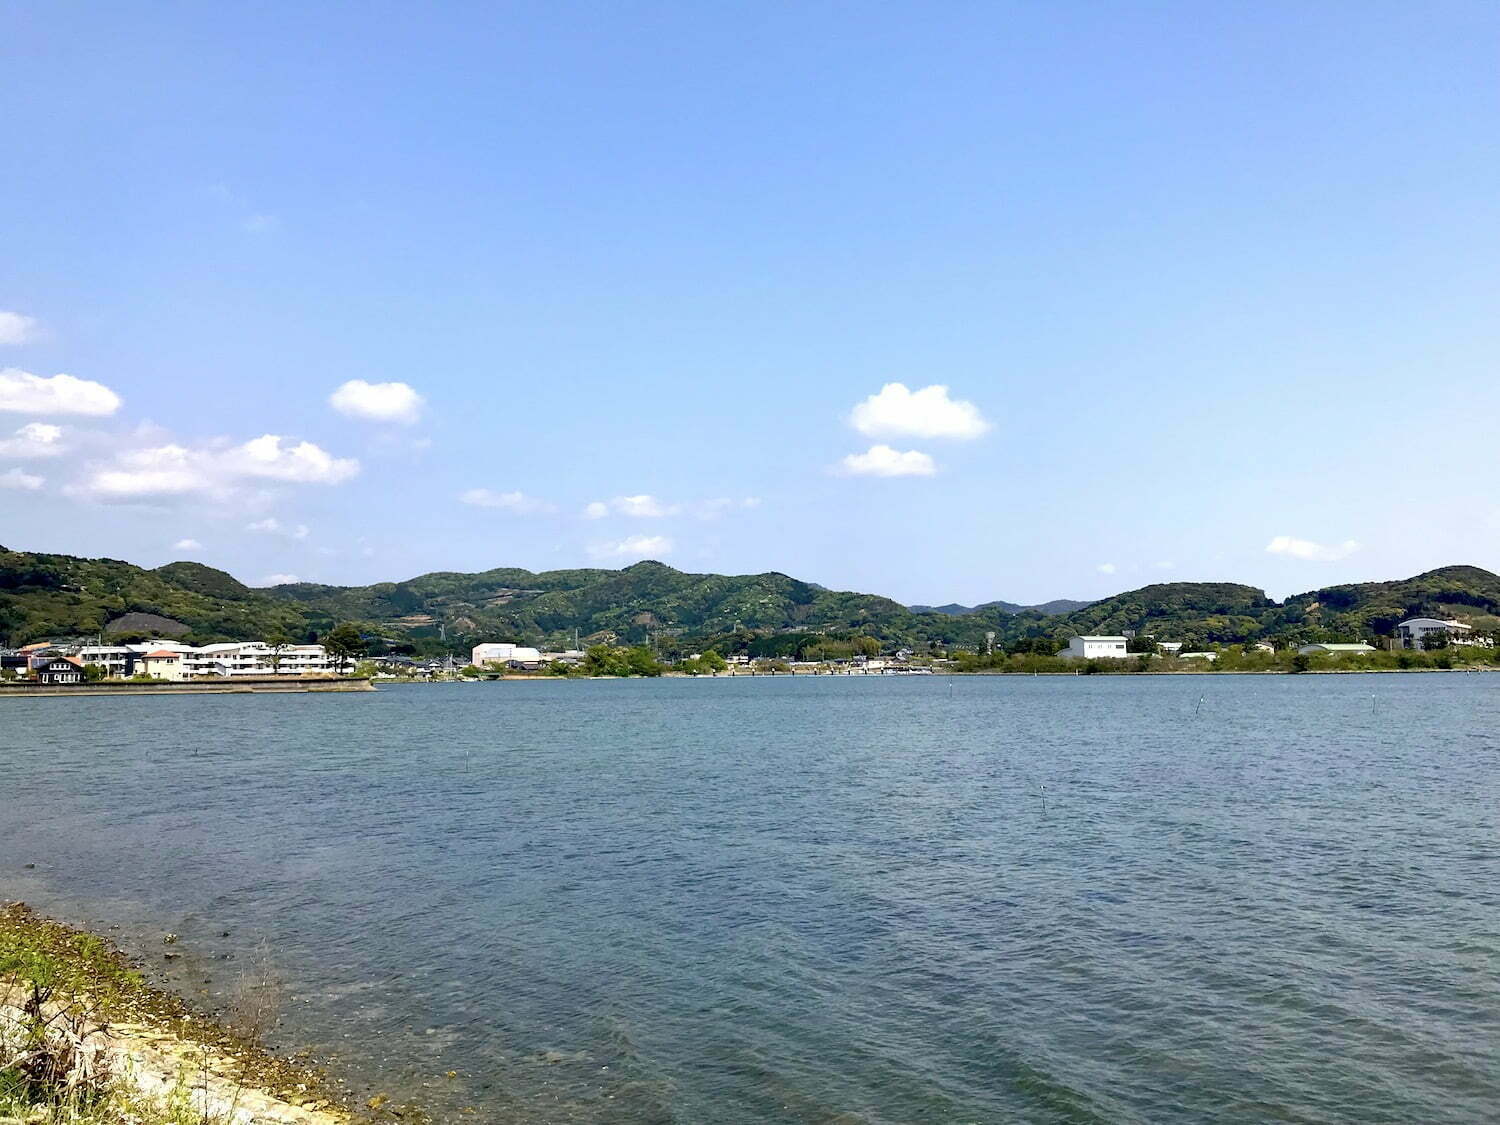 westside of Lake Hamanako